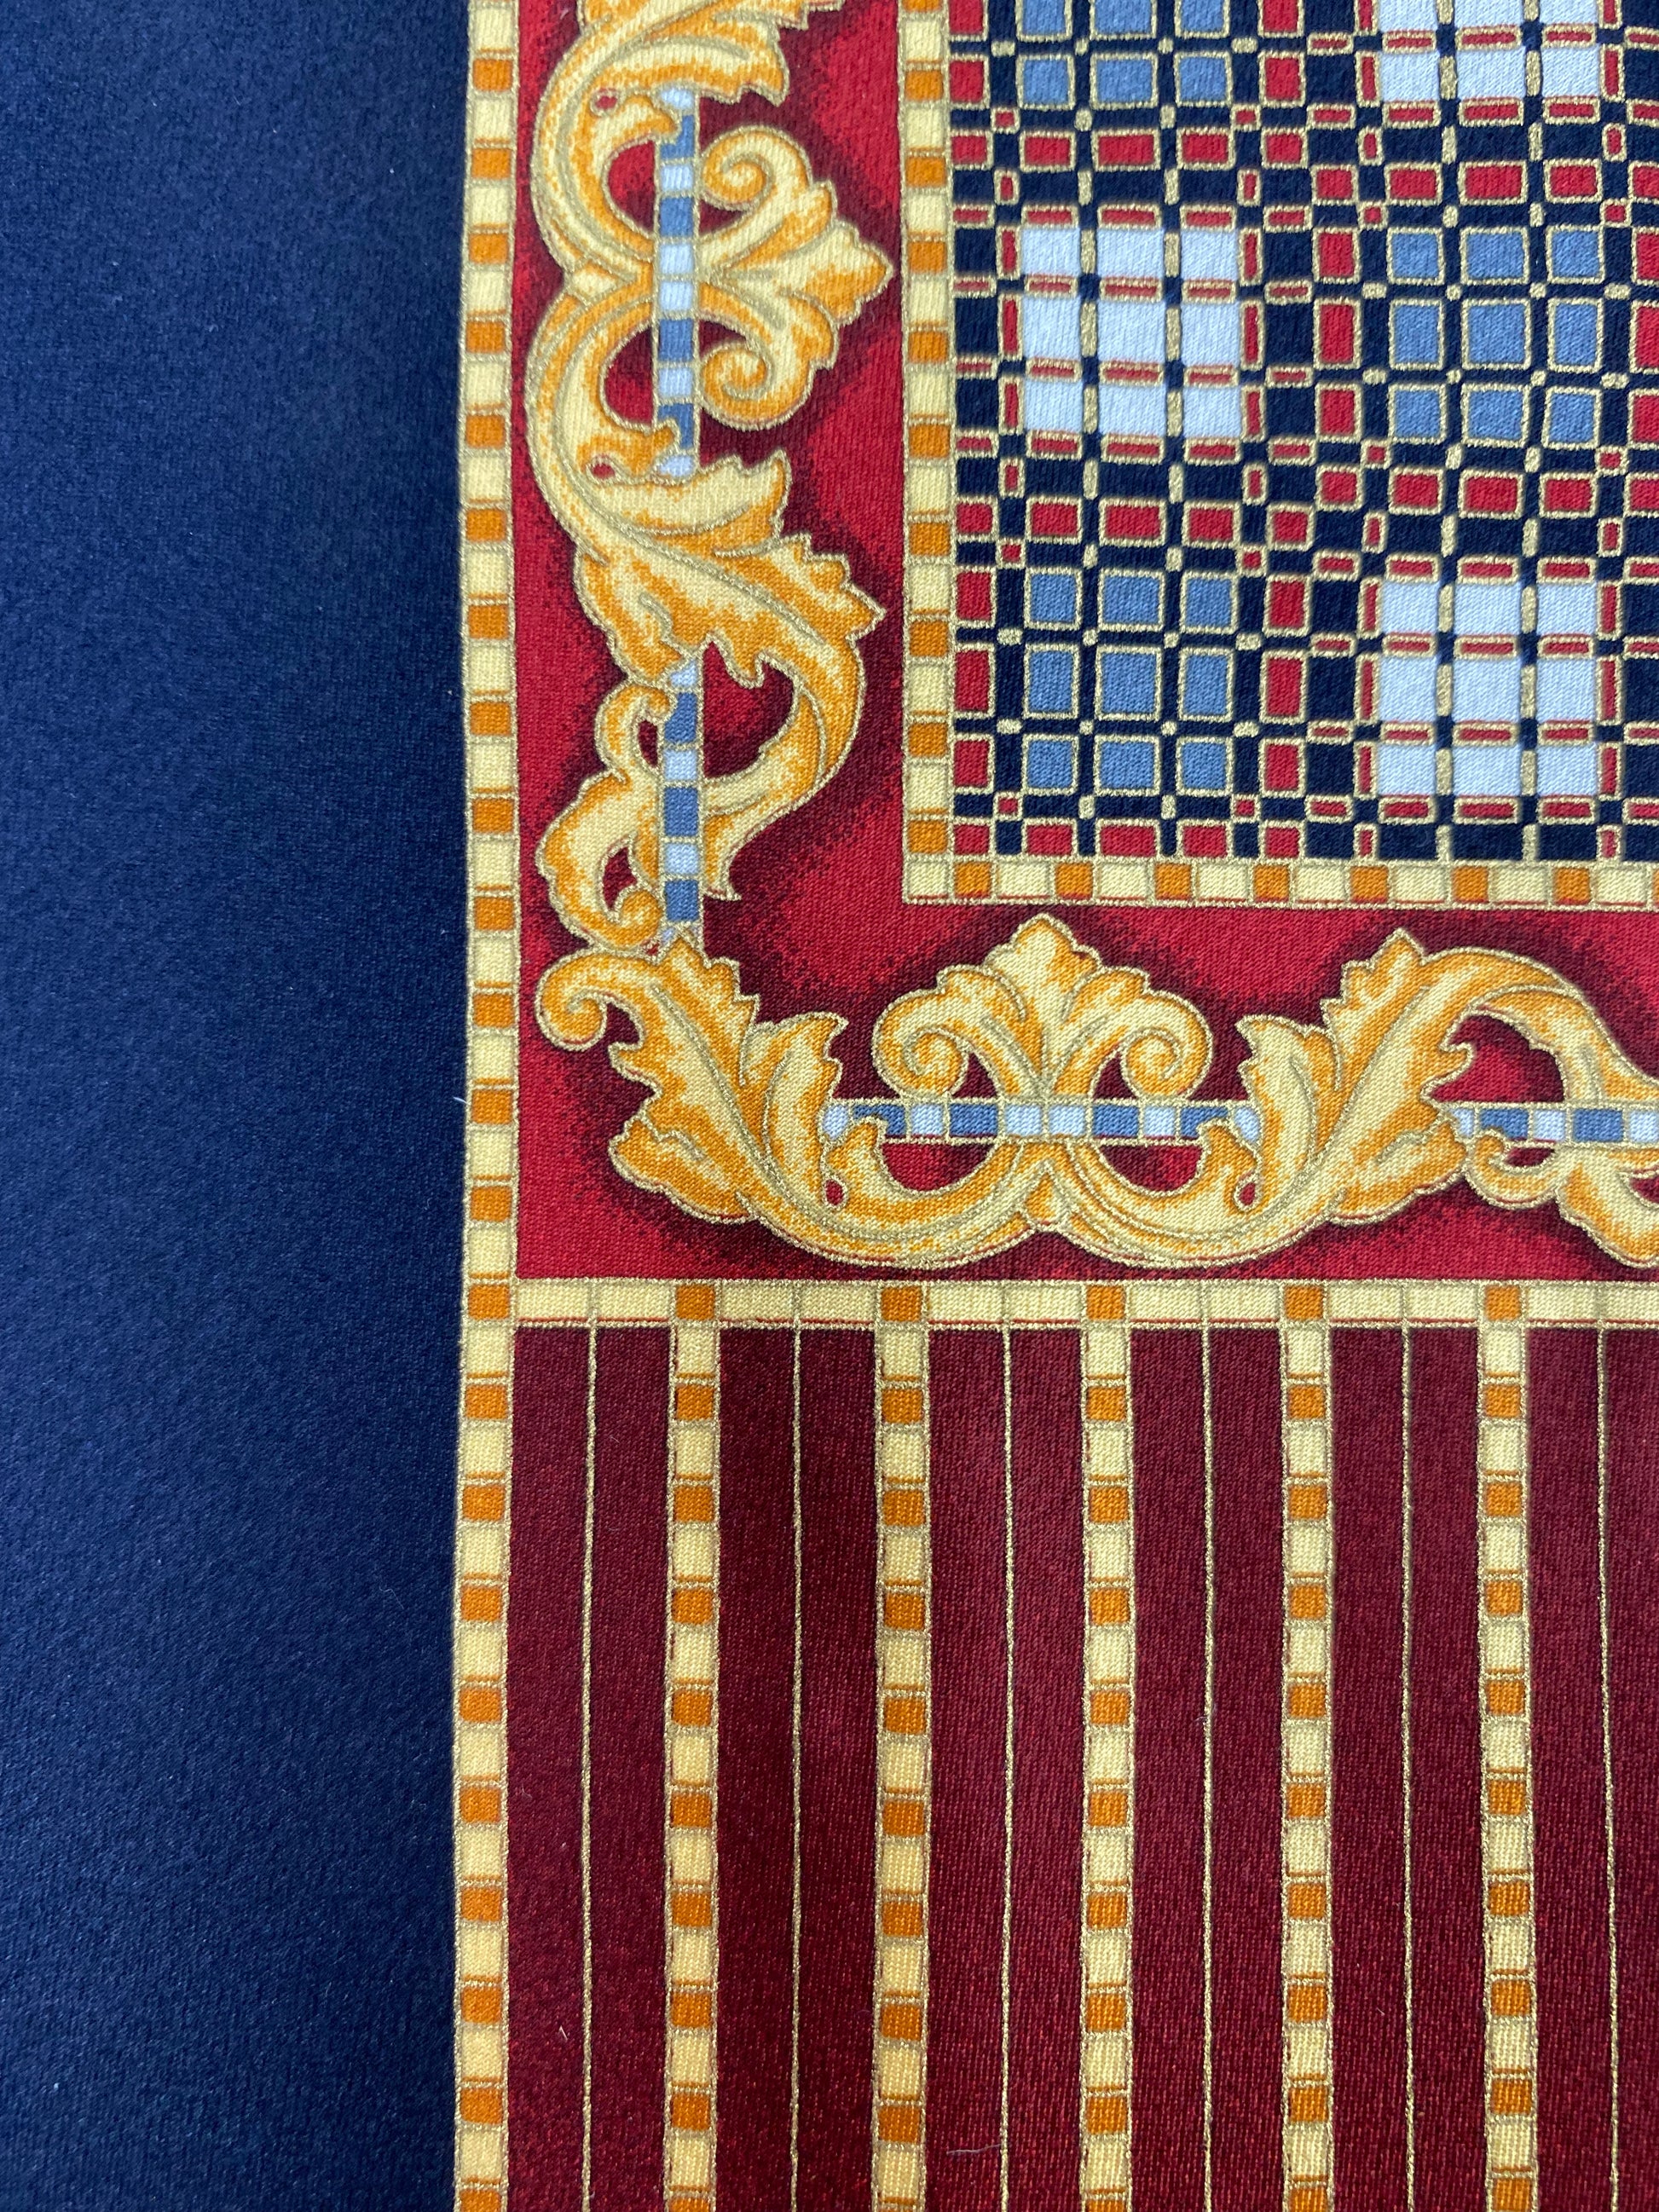 Close-up of: 90s Deadstock Silk Necktie, Men's Vintage Gold/Navy/Red Stripe Filigree Pattern Tie, NOS